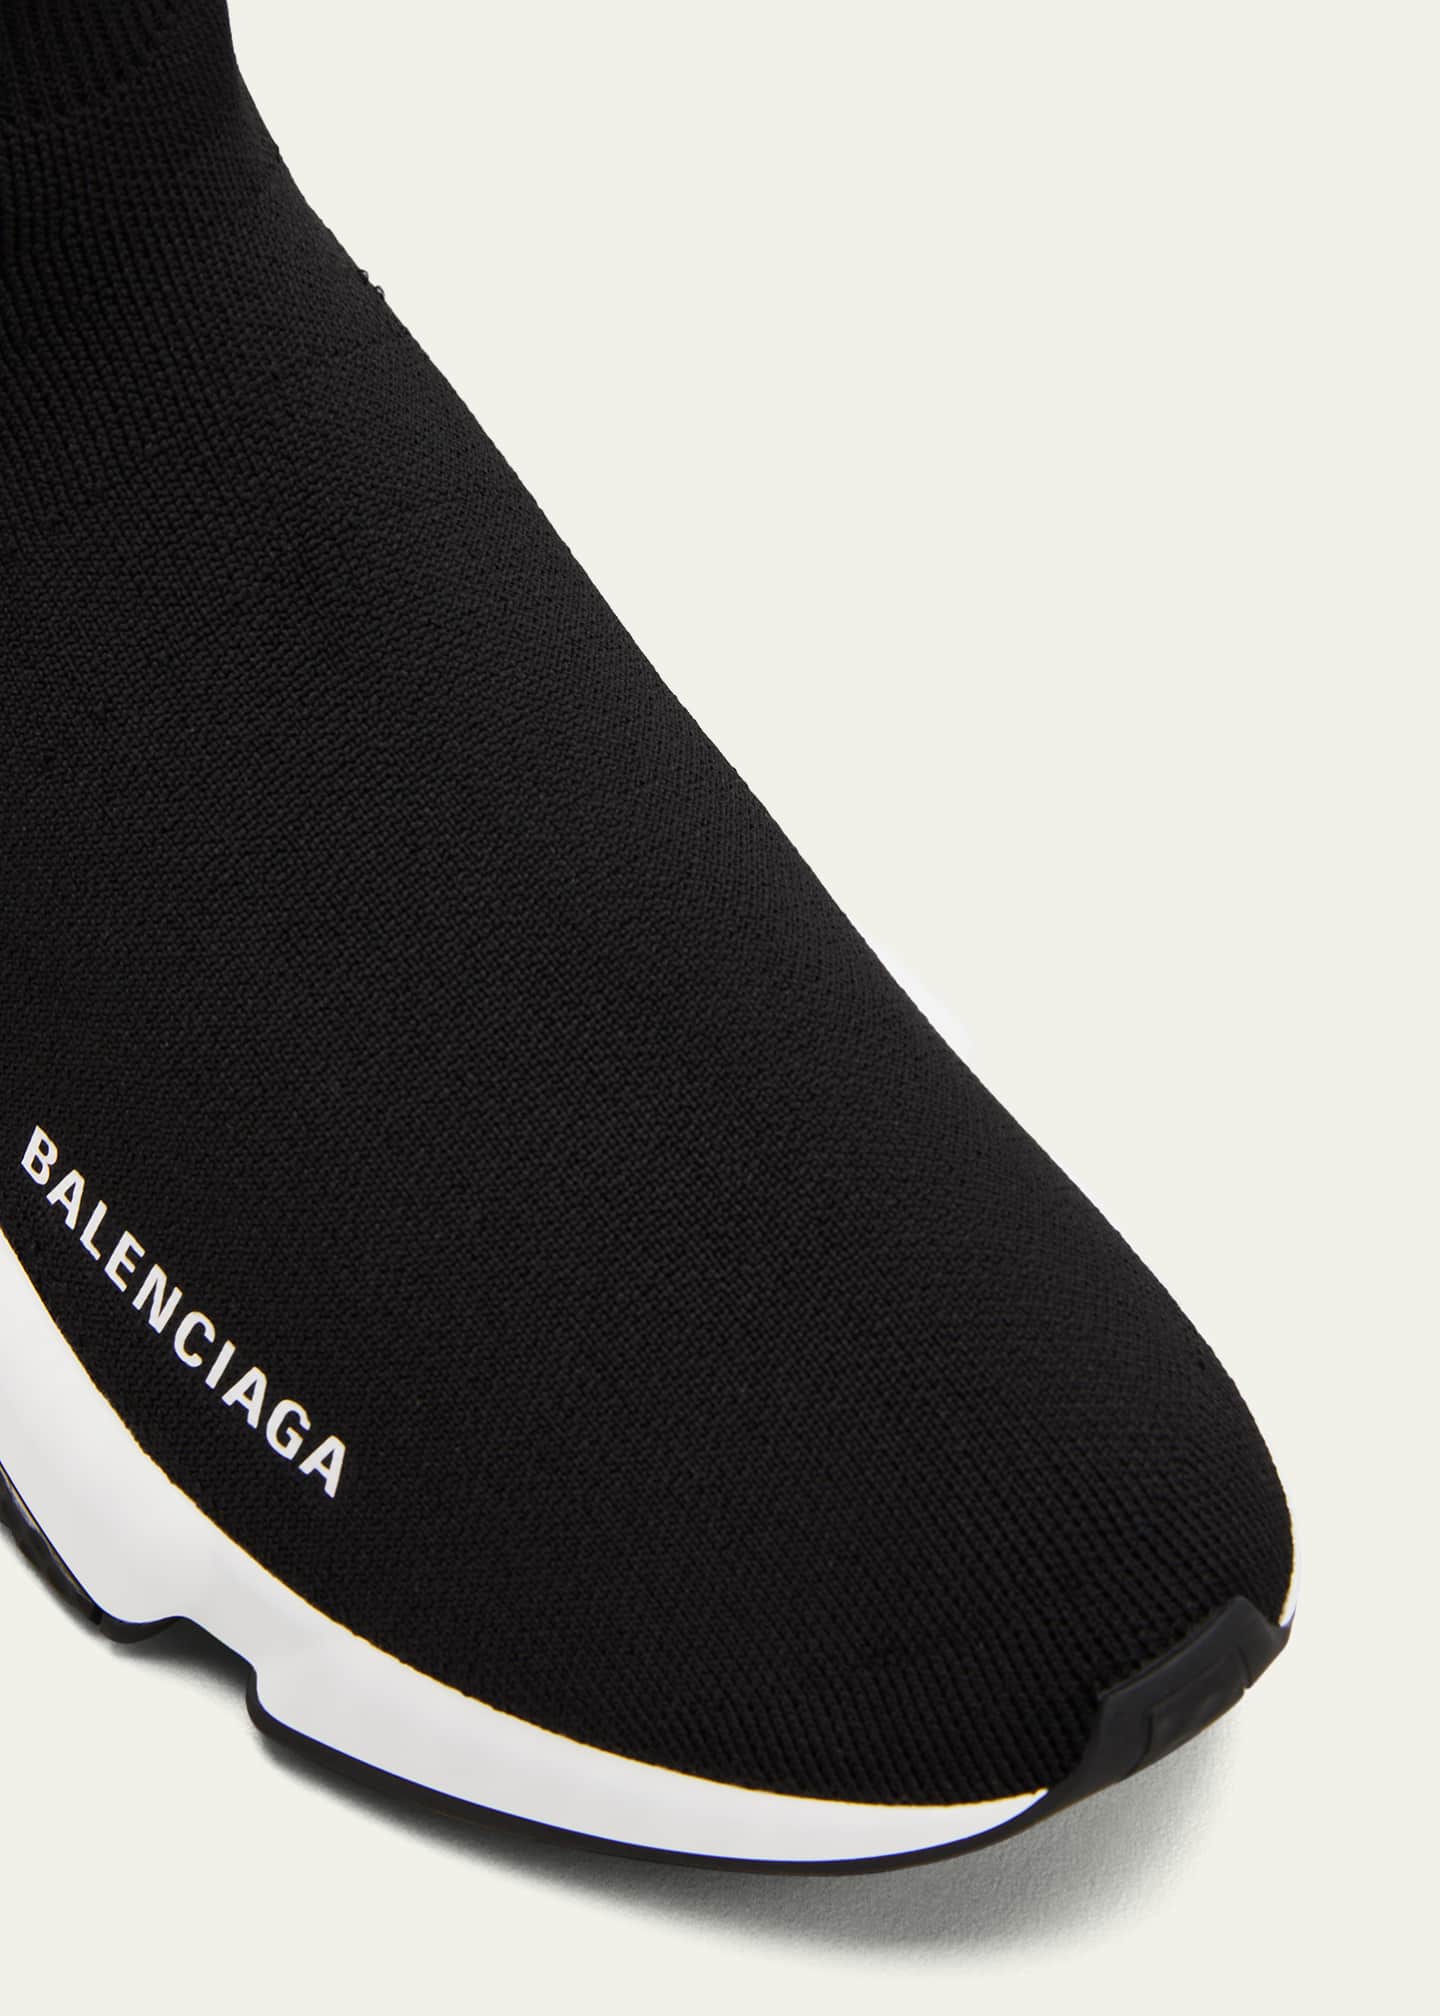 Balenciaga Speedy Sneakers Black and White SIZE 6